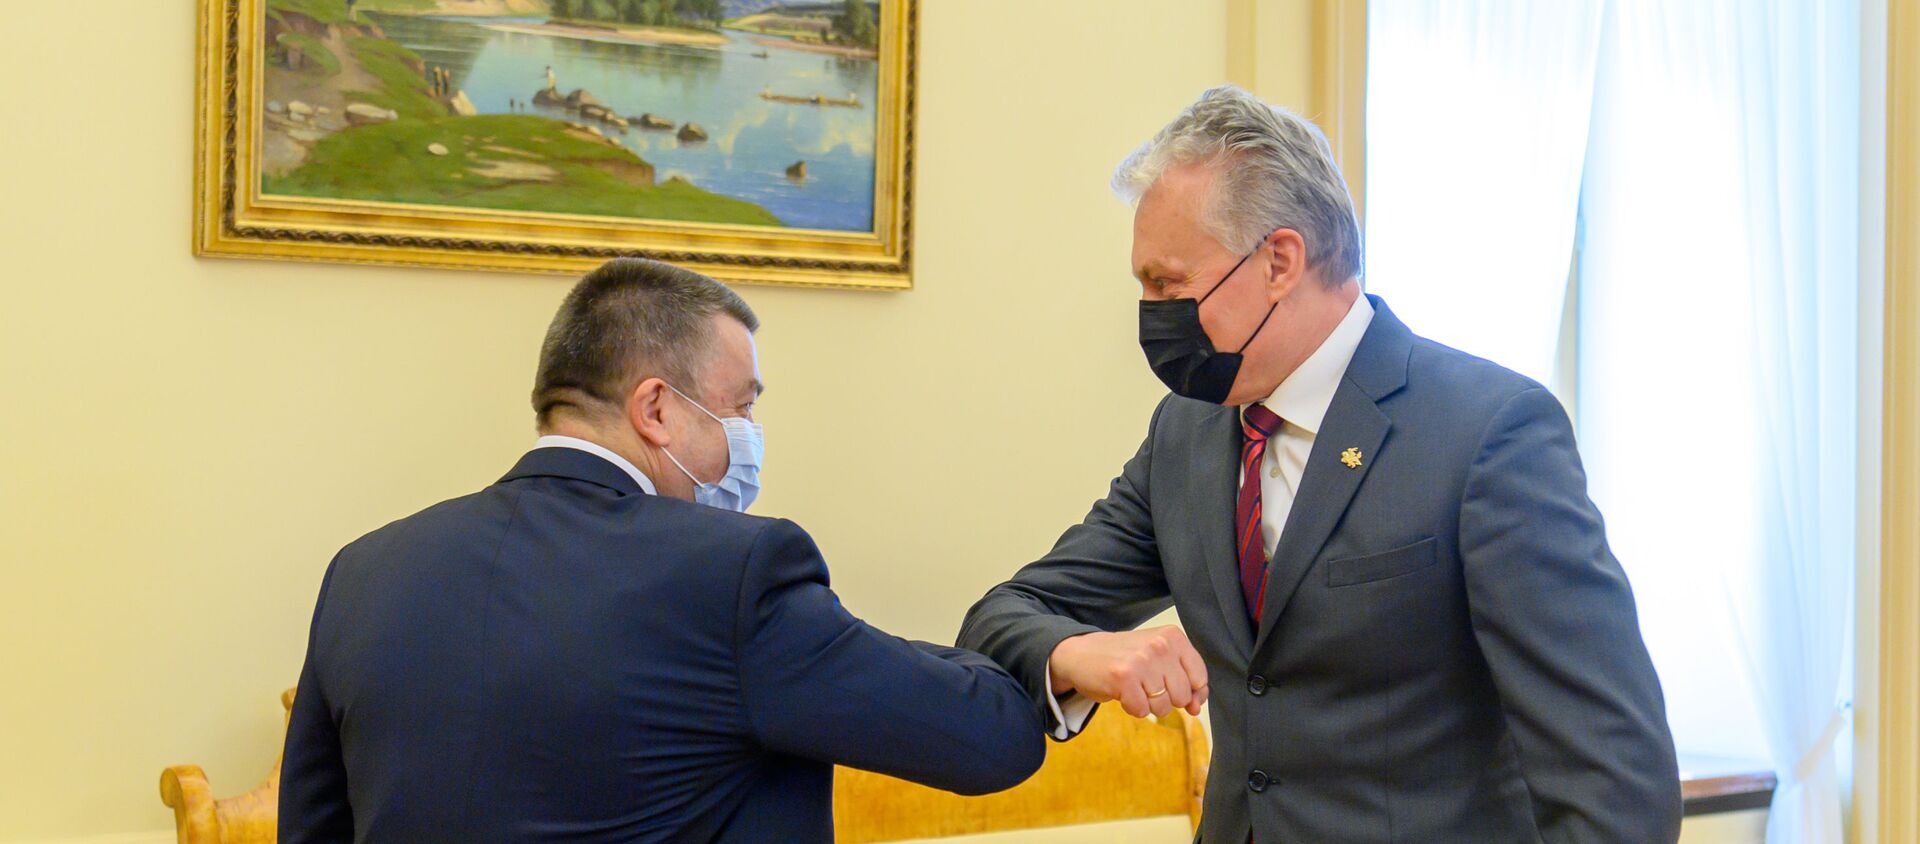 Президент Литвы Гитанас Науседа с главой Комитета Сейма по здравоохранению Антанасом Матуласом, 20 апреля 2021 года - Sputnik Литва, 1920, 20.04.2021